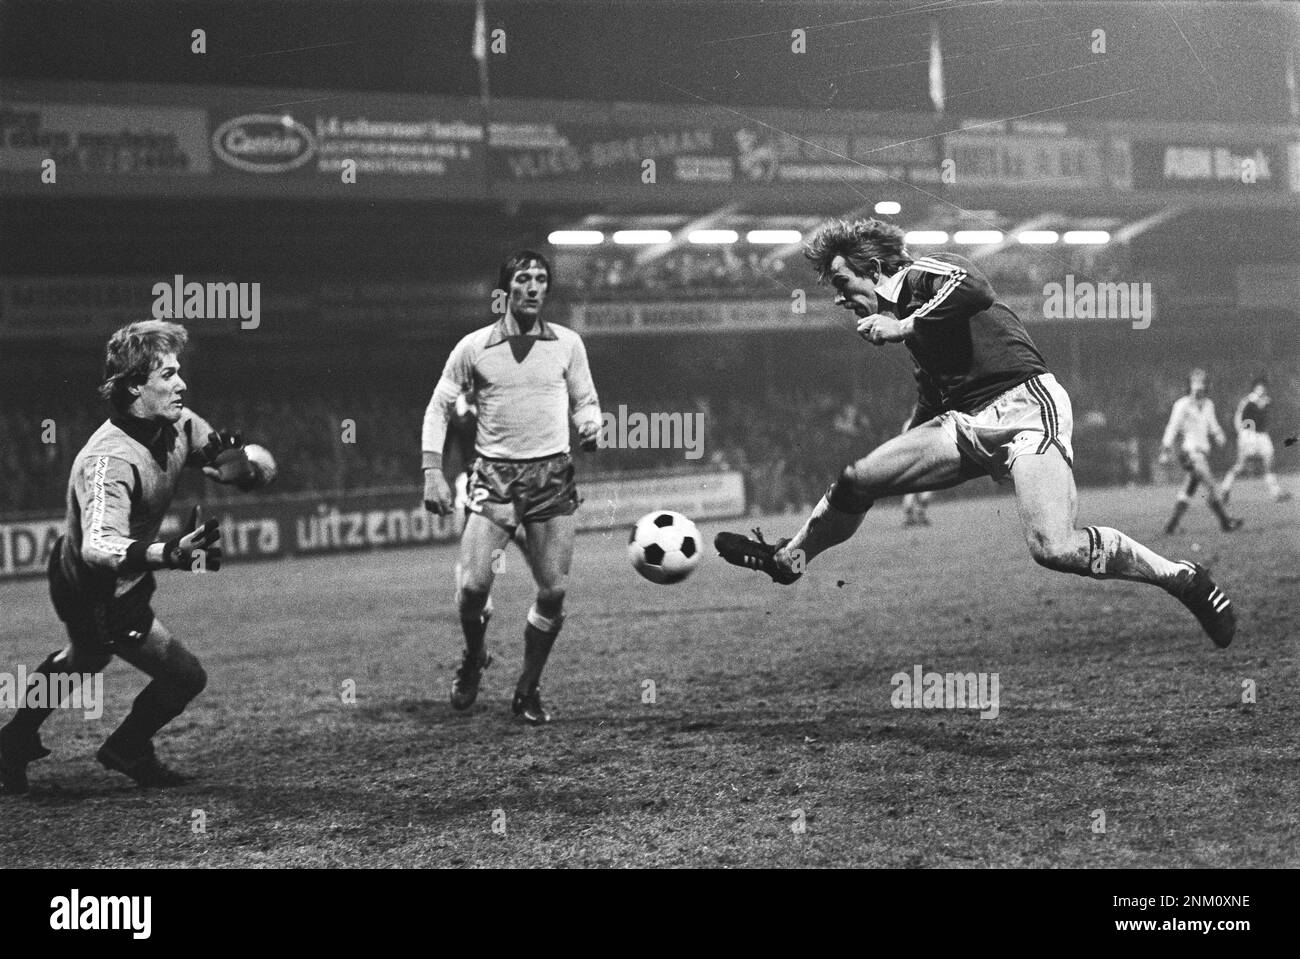 Netherlands History: AZ 67 against FC Utrecht 2-0, (KNVB Cup); Jaan de Graaf is going to score, goalkeeper van Breukelen, Utrecht player Wilbret ca. February 13, 1980 Stock Photo